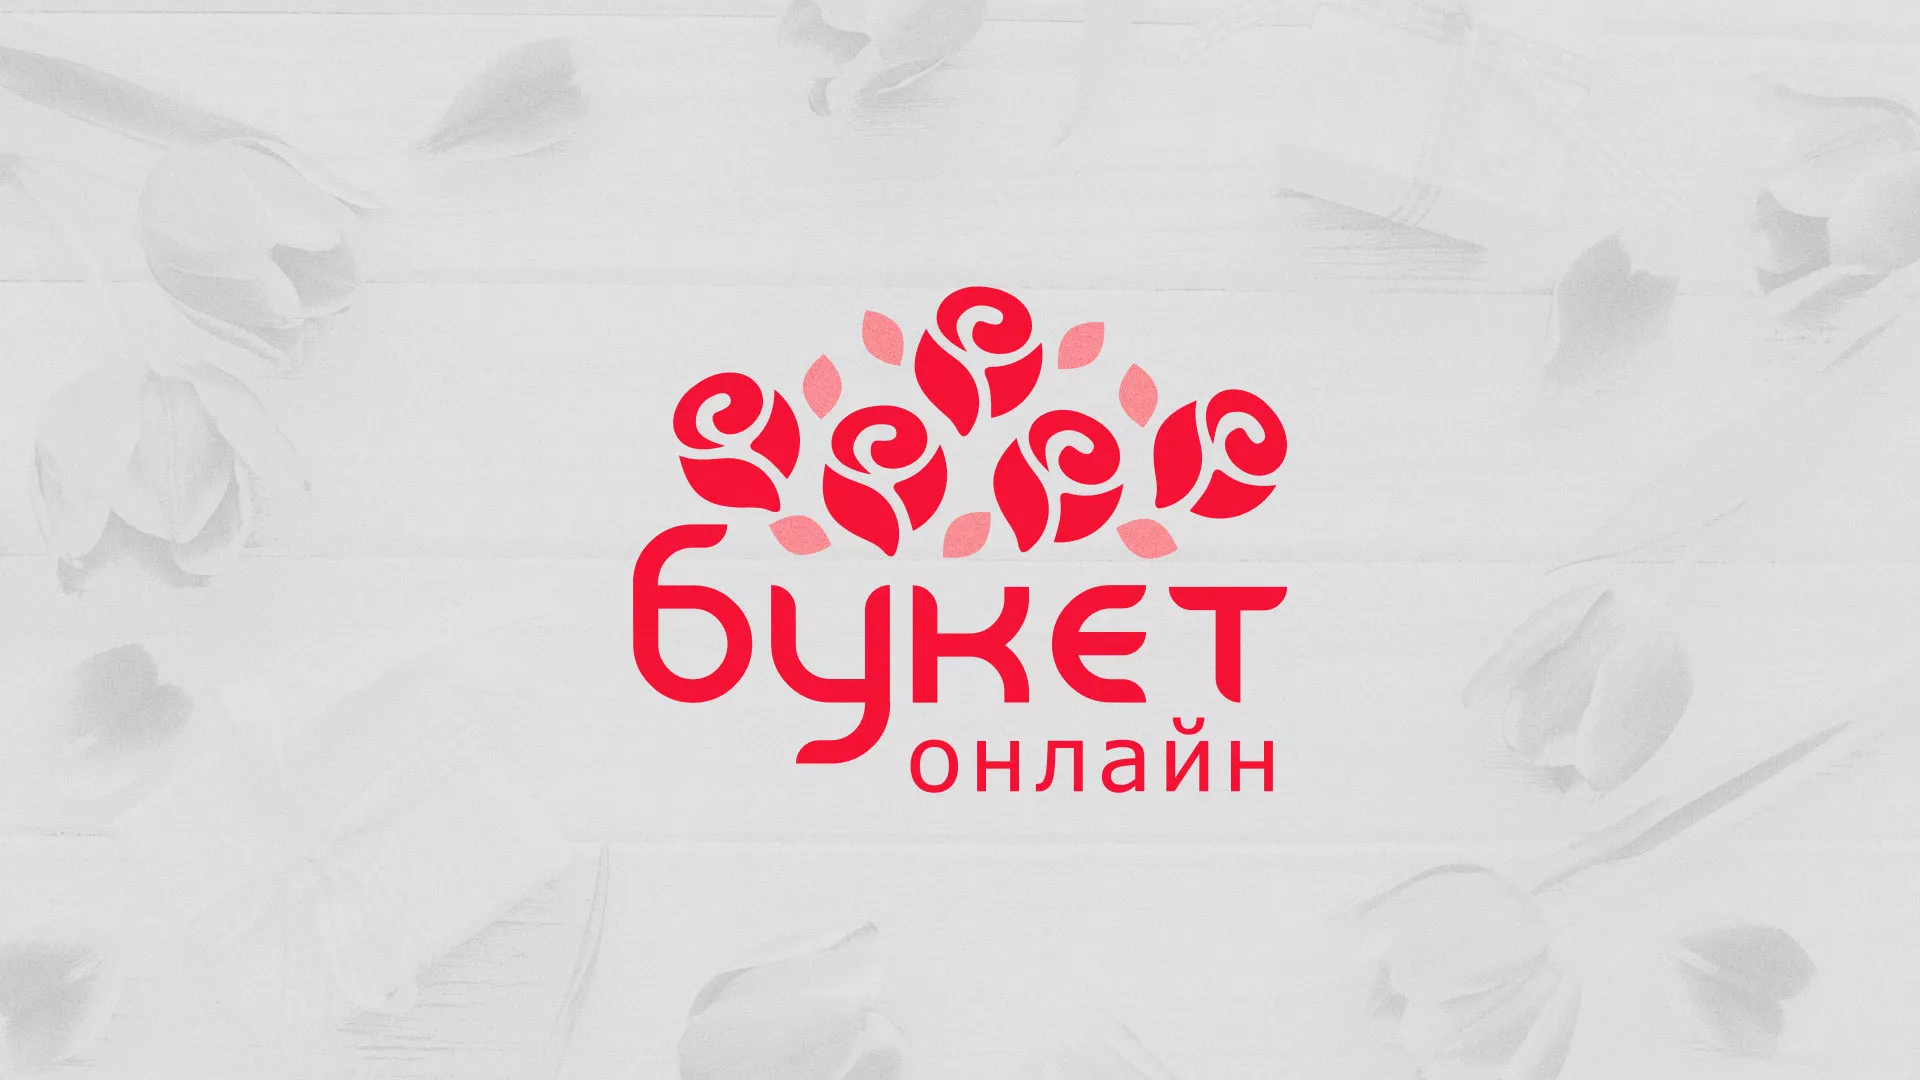 Создание интернет-магазина «Букет-онлайн» по цветам в Звенигово